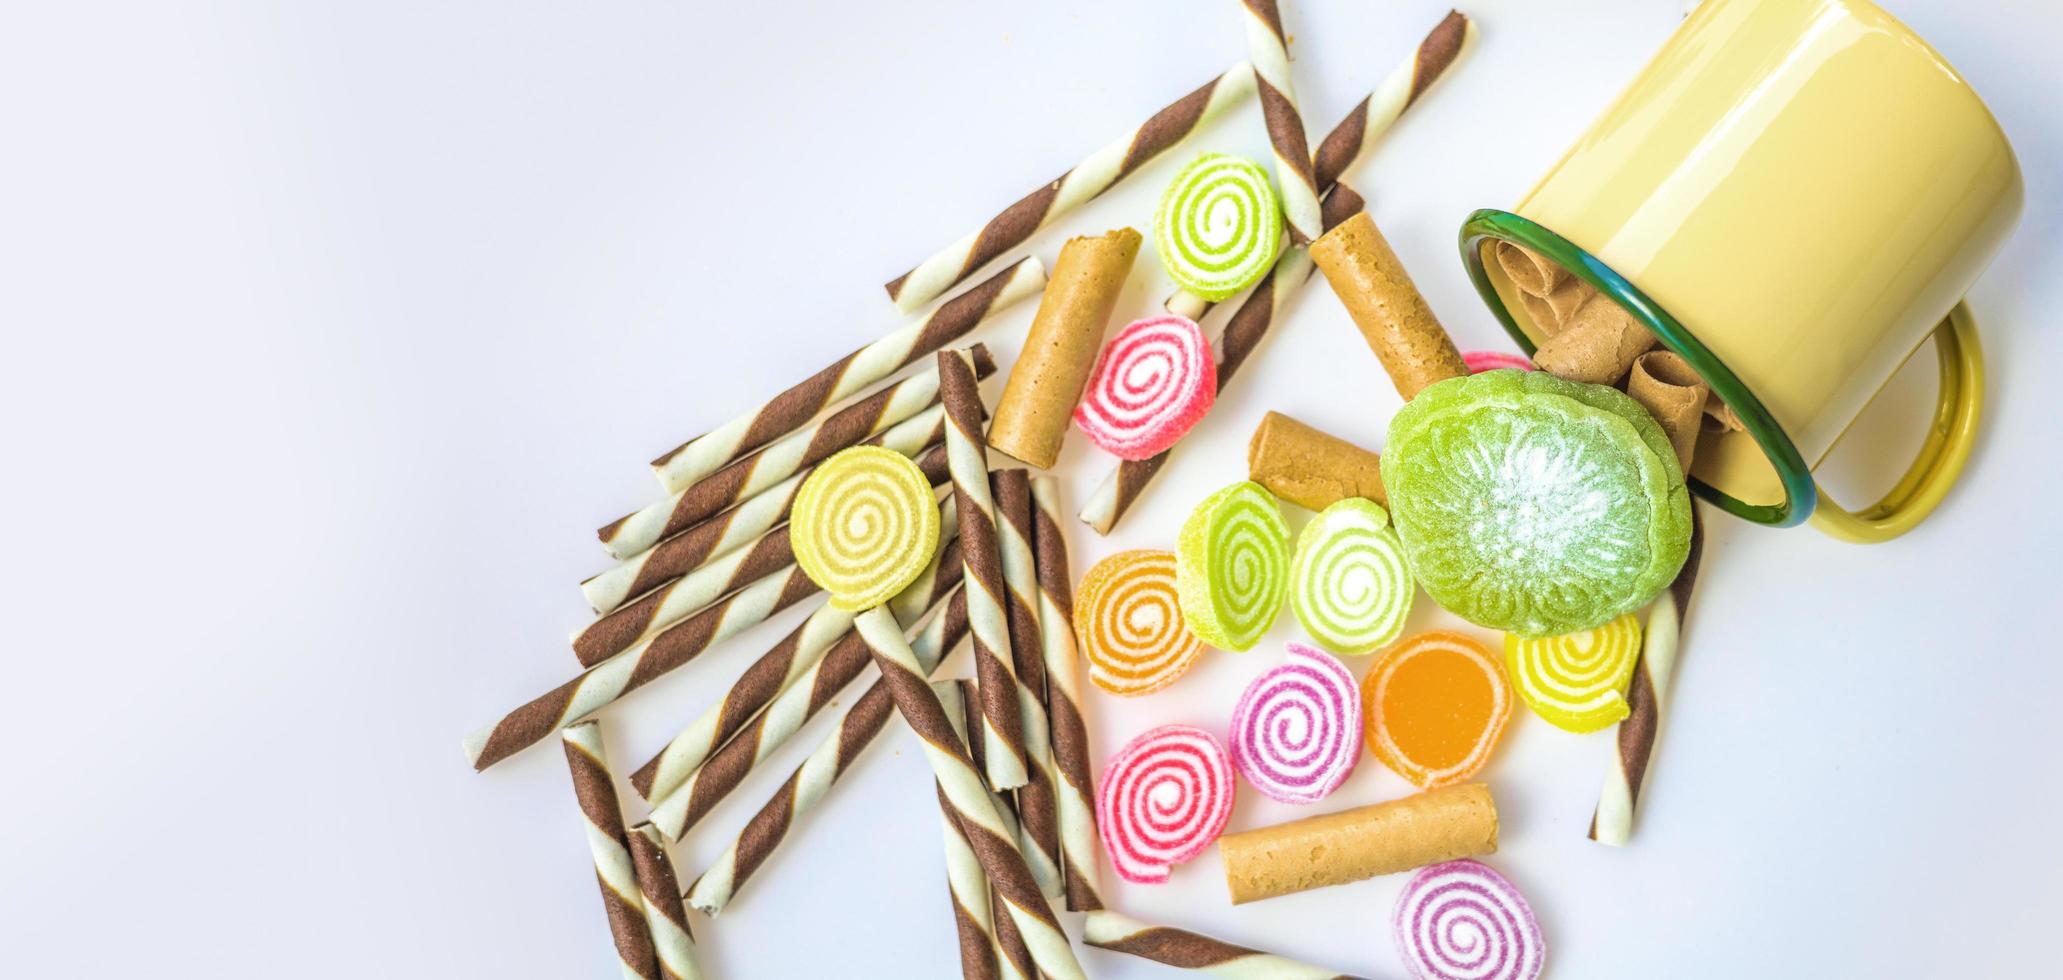 Bonbons colorés et bonbons au sucre sur fond blanc photo